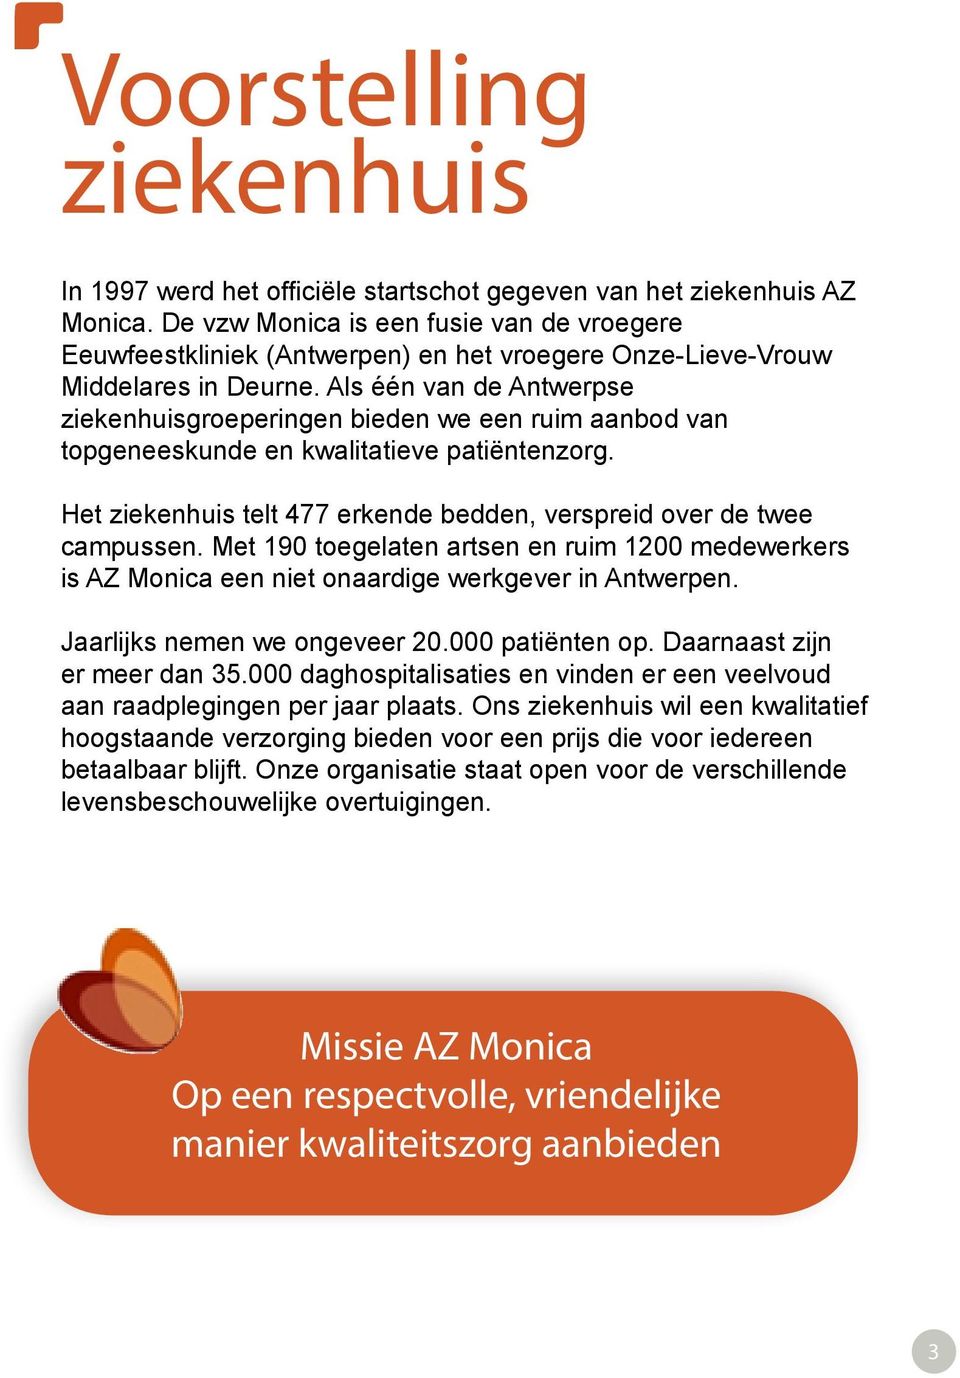 Als één van de Antwerpse ziekenhuisgroeperingen bieden we een ruim aanbod van topgeneeskunde en kwalitatieve patiëntenzorg. Het ziekenhuis telt 477 erkende bedden, verspreid over de twee campussen.